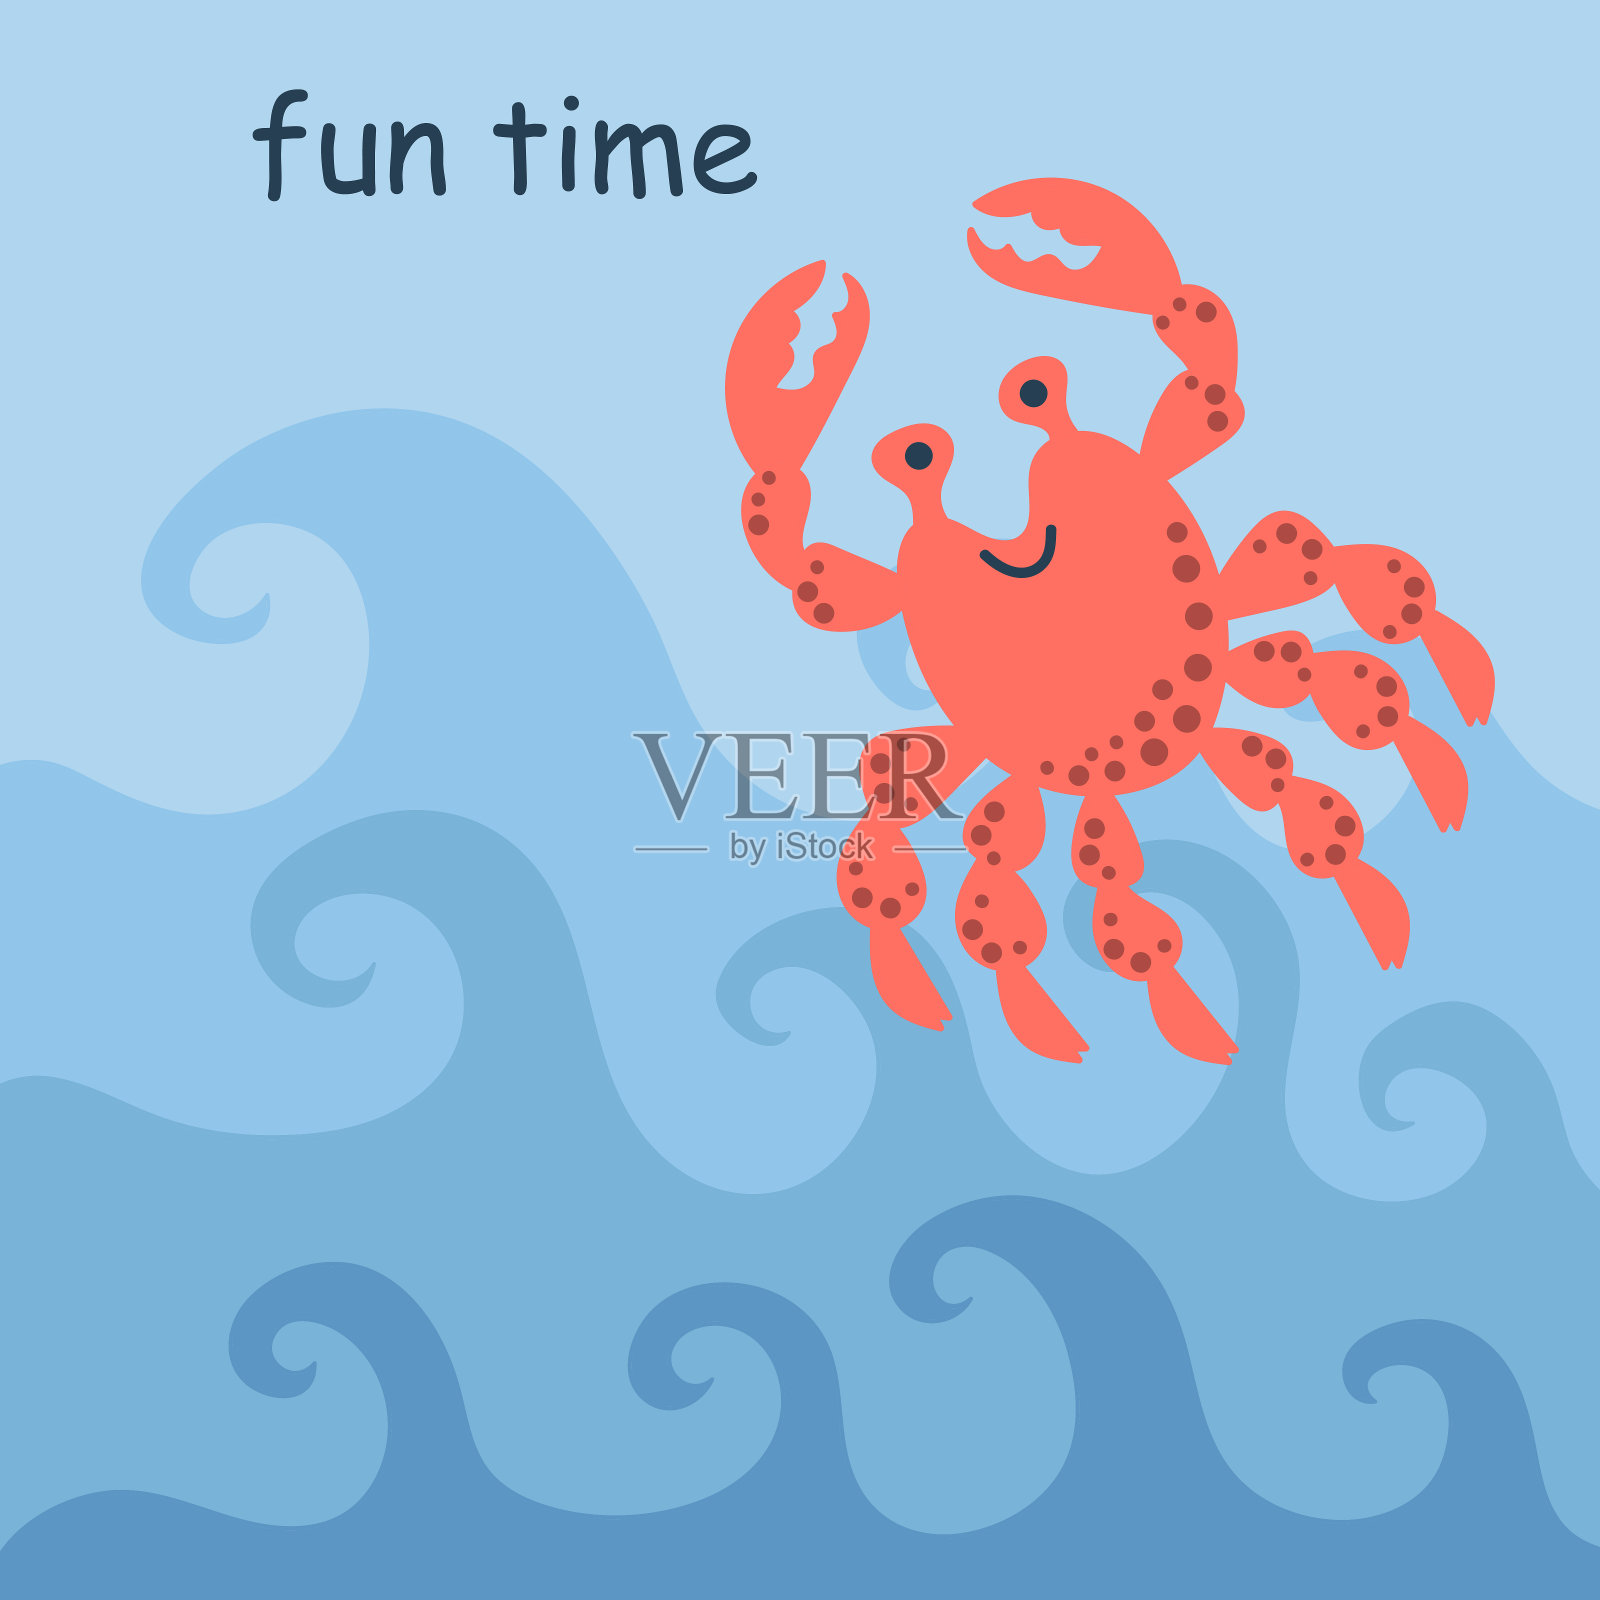 快乐的螃蟹在波浪上跳。娱乐时间,签名。手绘矢量图插画图片素材